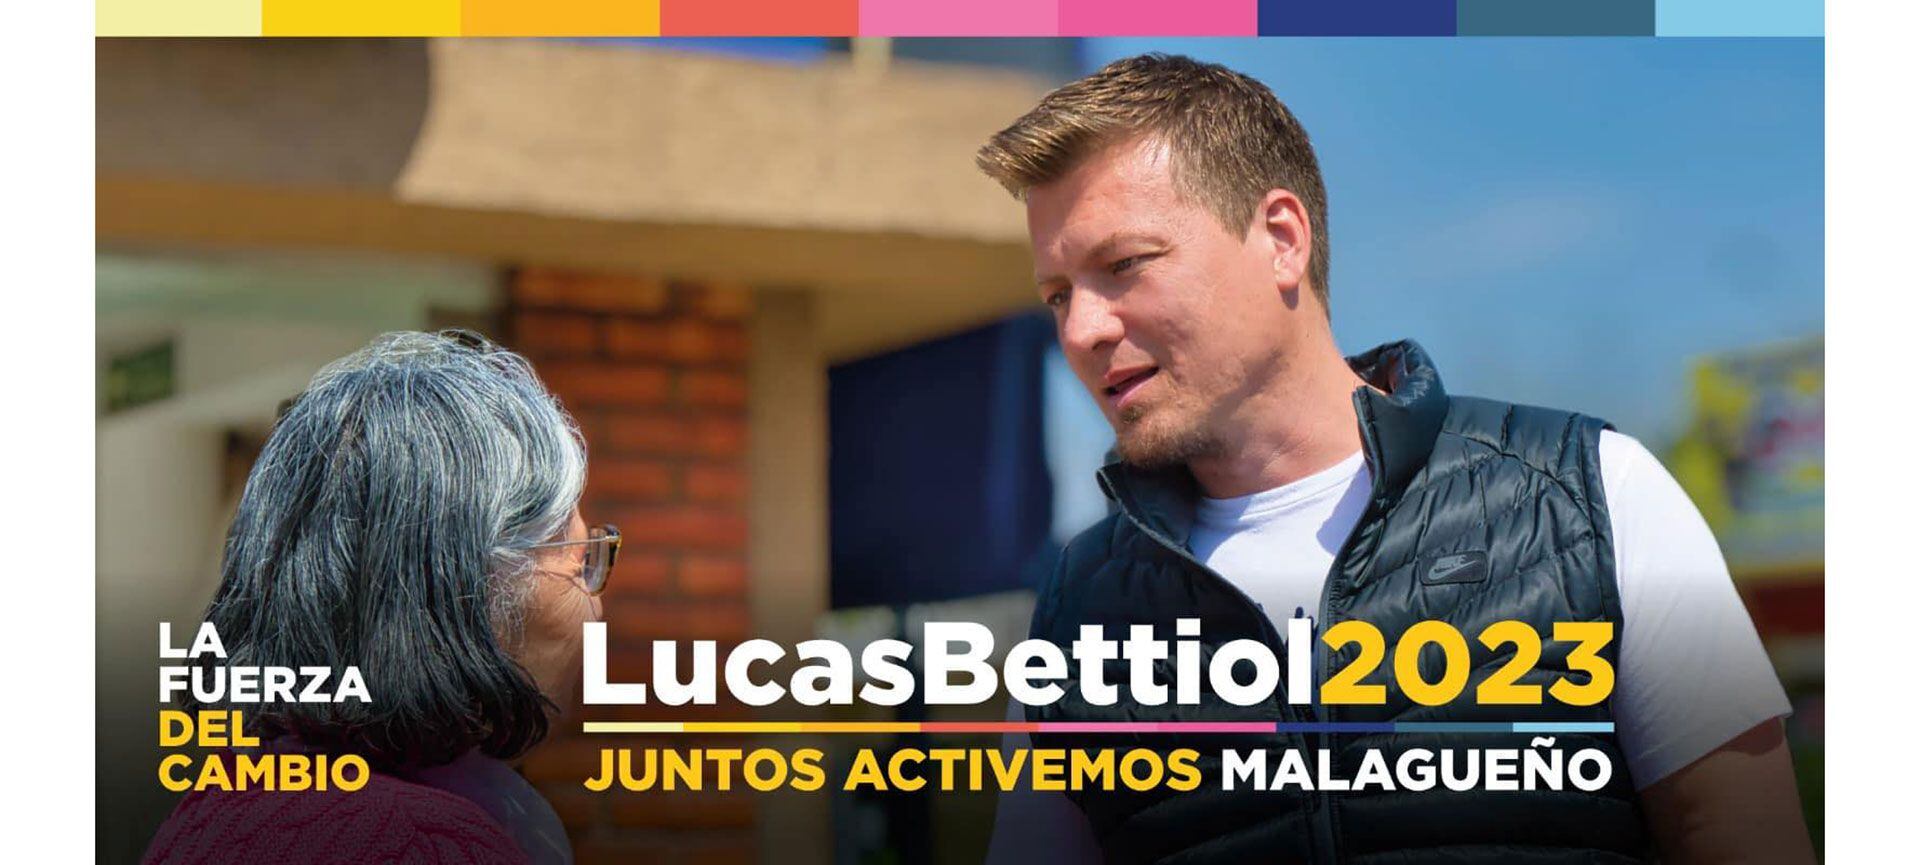 Lucas Bettiol